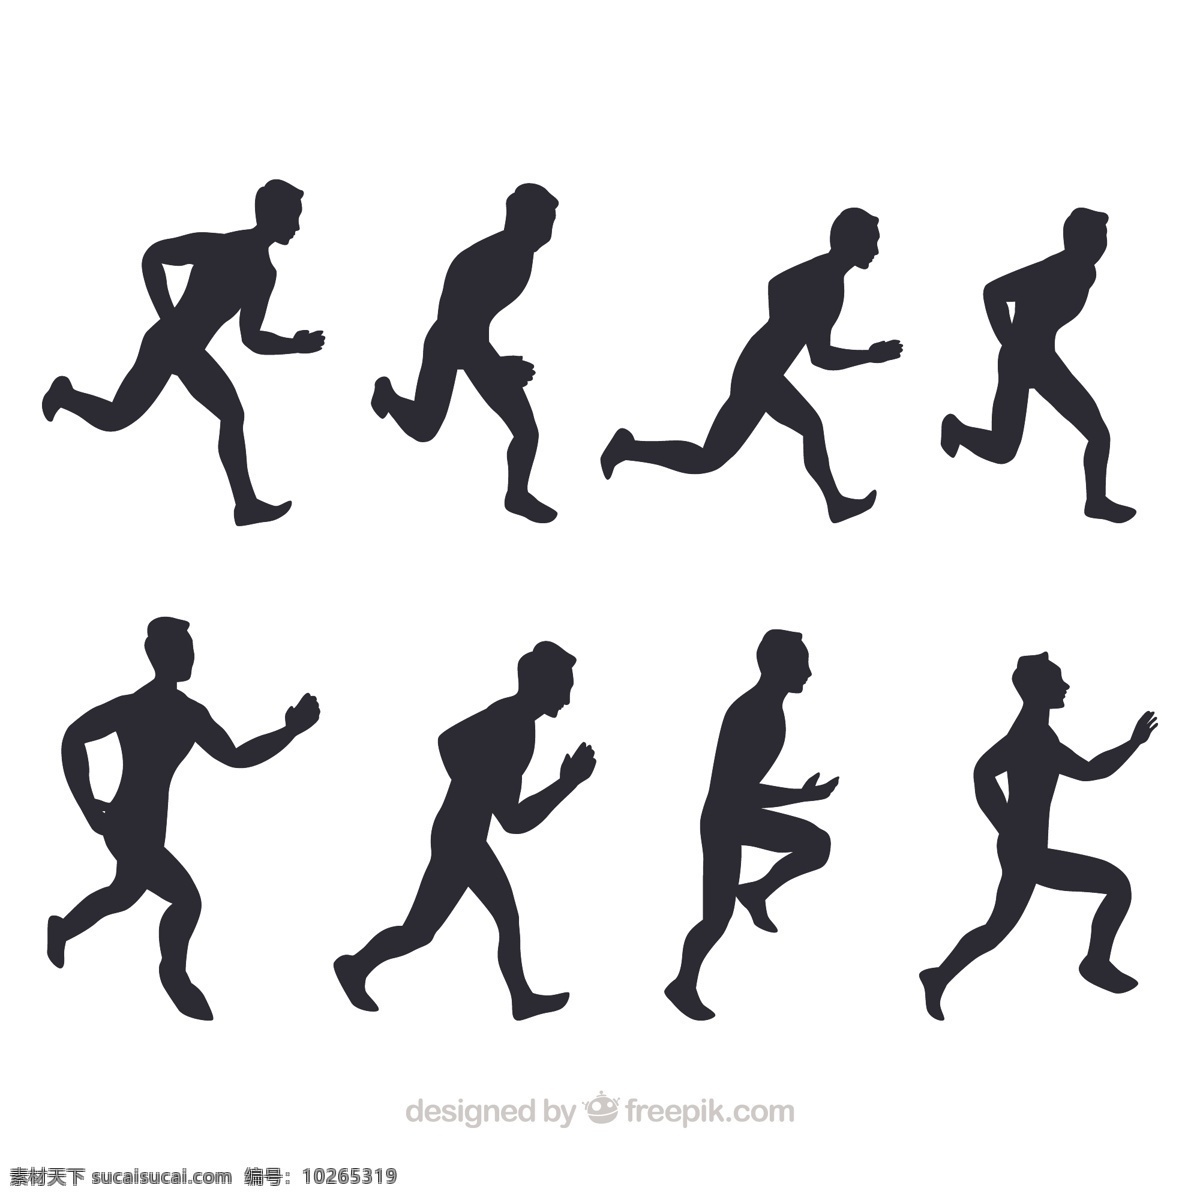 各种 跑步 人 剪影 插图 各种跑步的人 插图设计